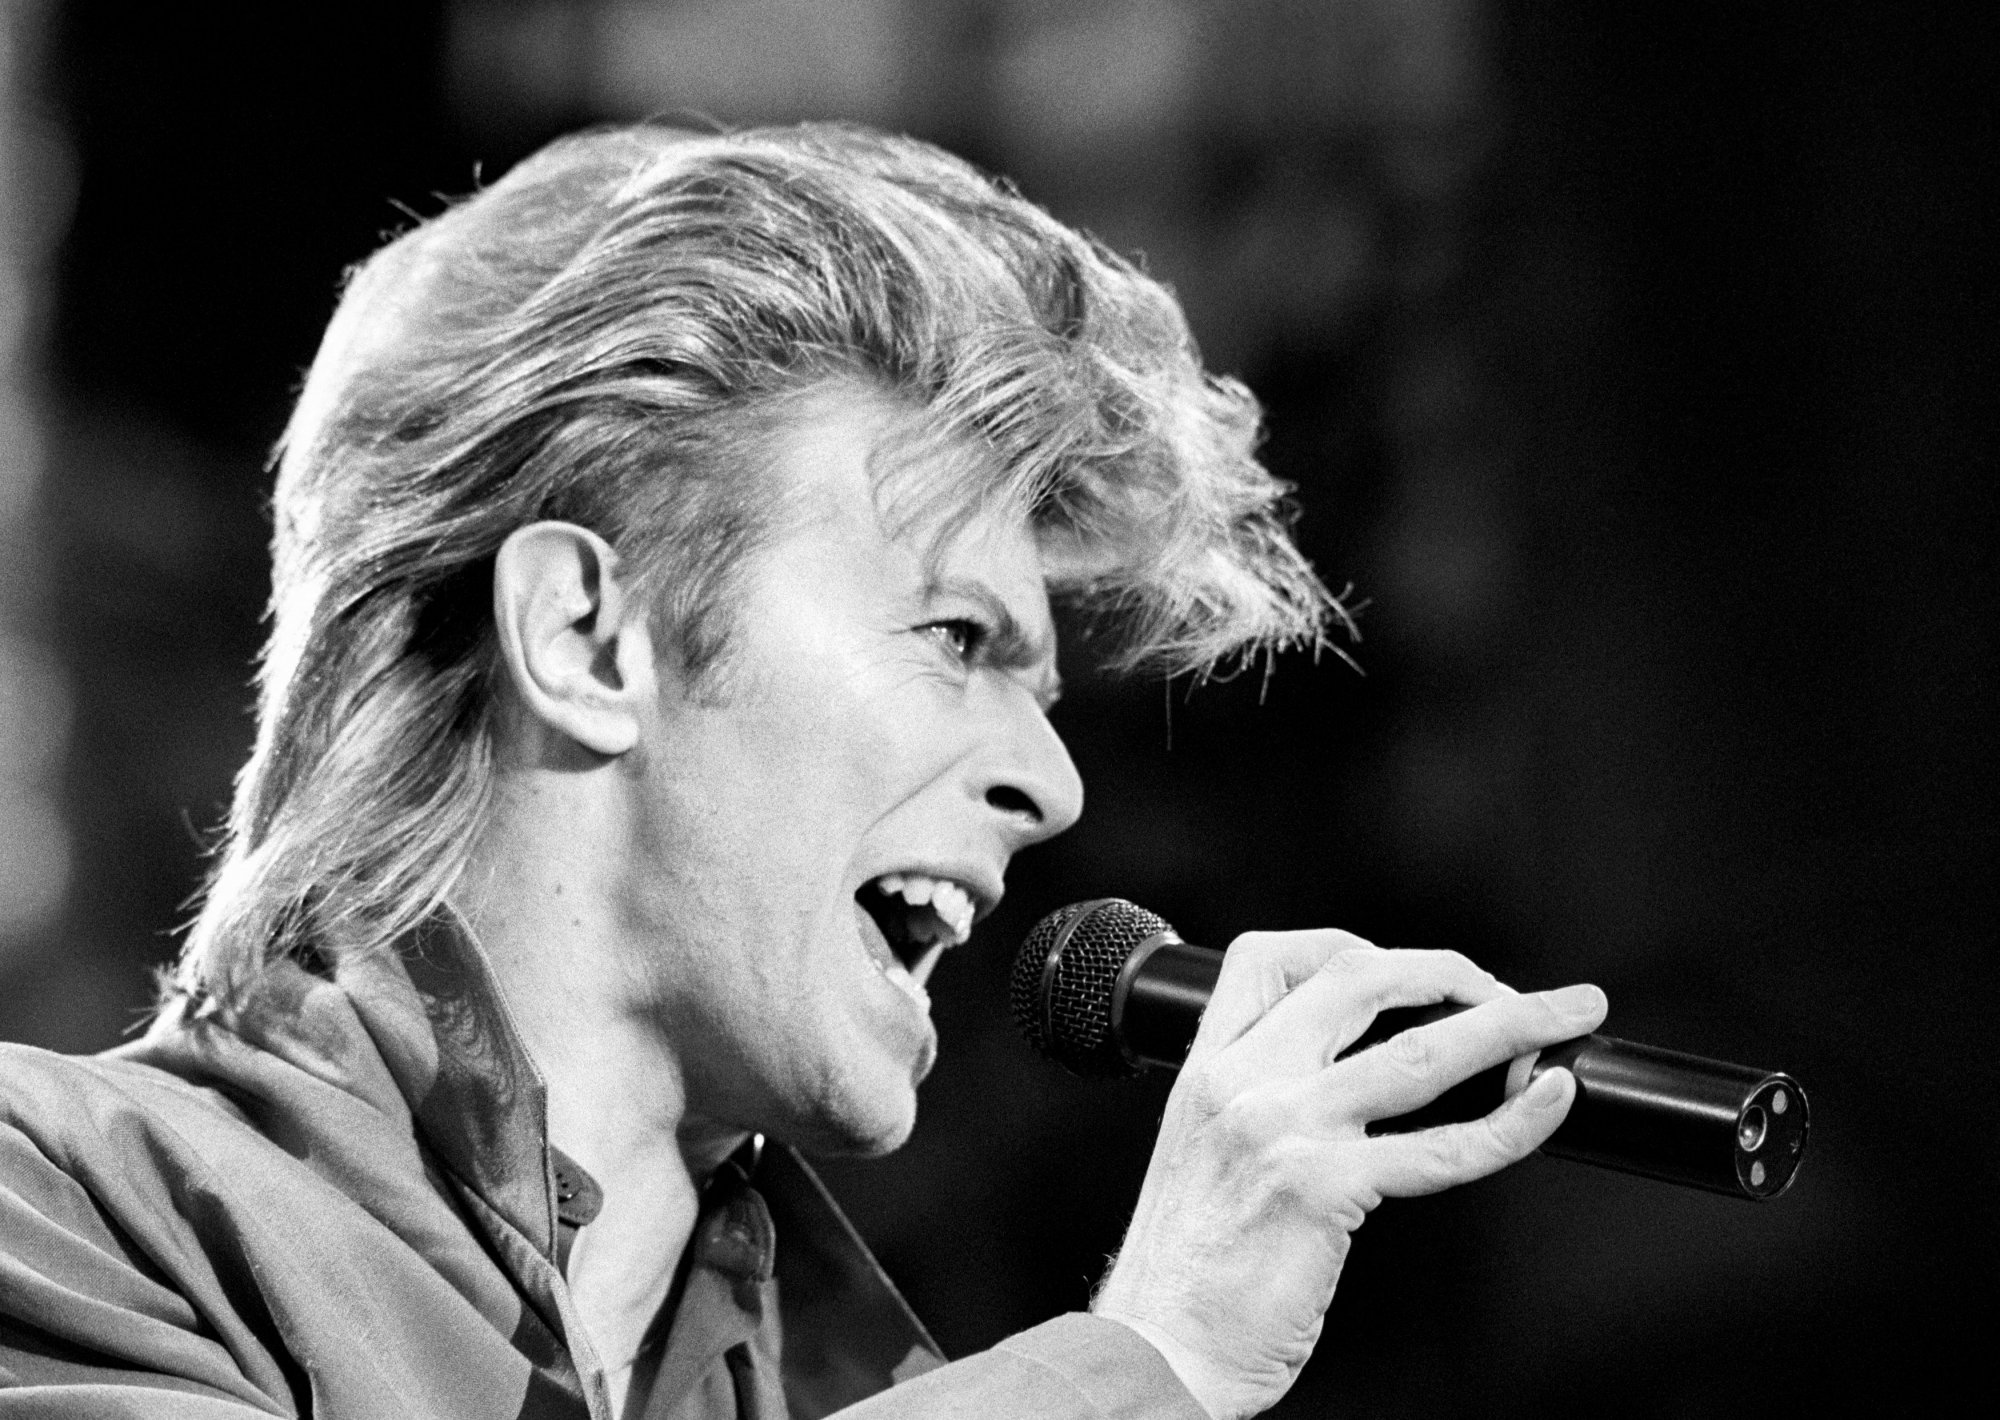 David Bowie sur scène, le 19 juin 1987.